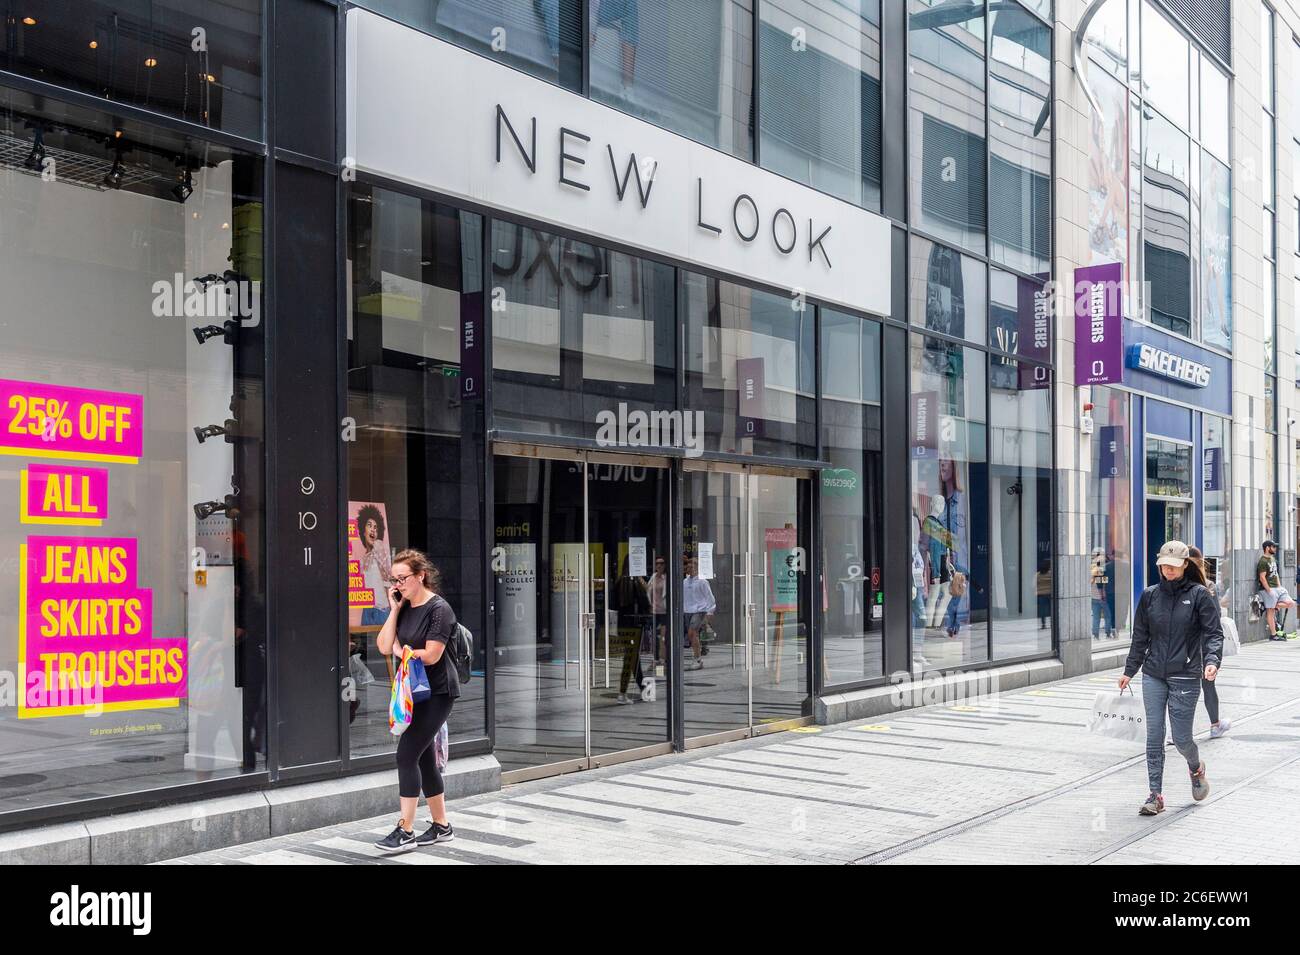 Cork, Irlanda. 9 luglio 2020. Il negozio di abbigliamento New look a Opera Lane, città di Cork, è rimasto chiuso oggi a causa del Coronavirus, con una data di riapertura incerta. Credit: Notizie dal vivo di AG/Alamy Foto Stock